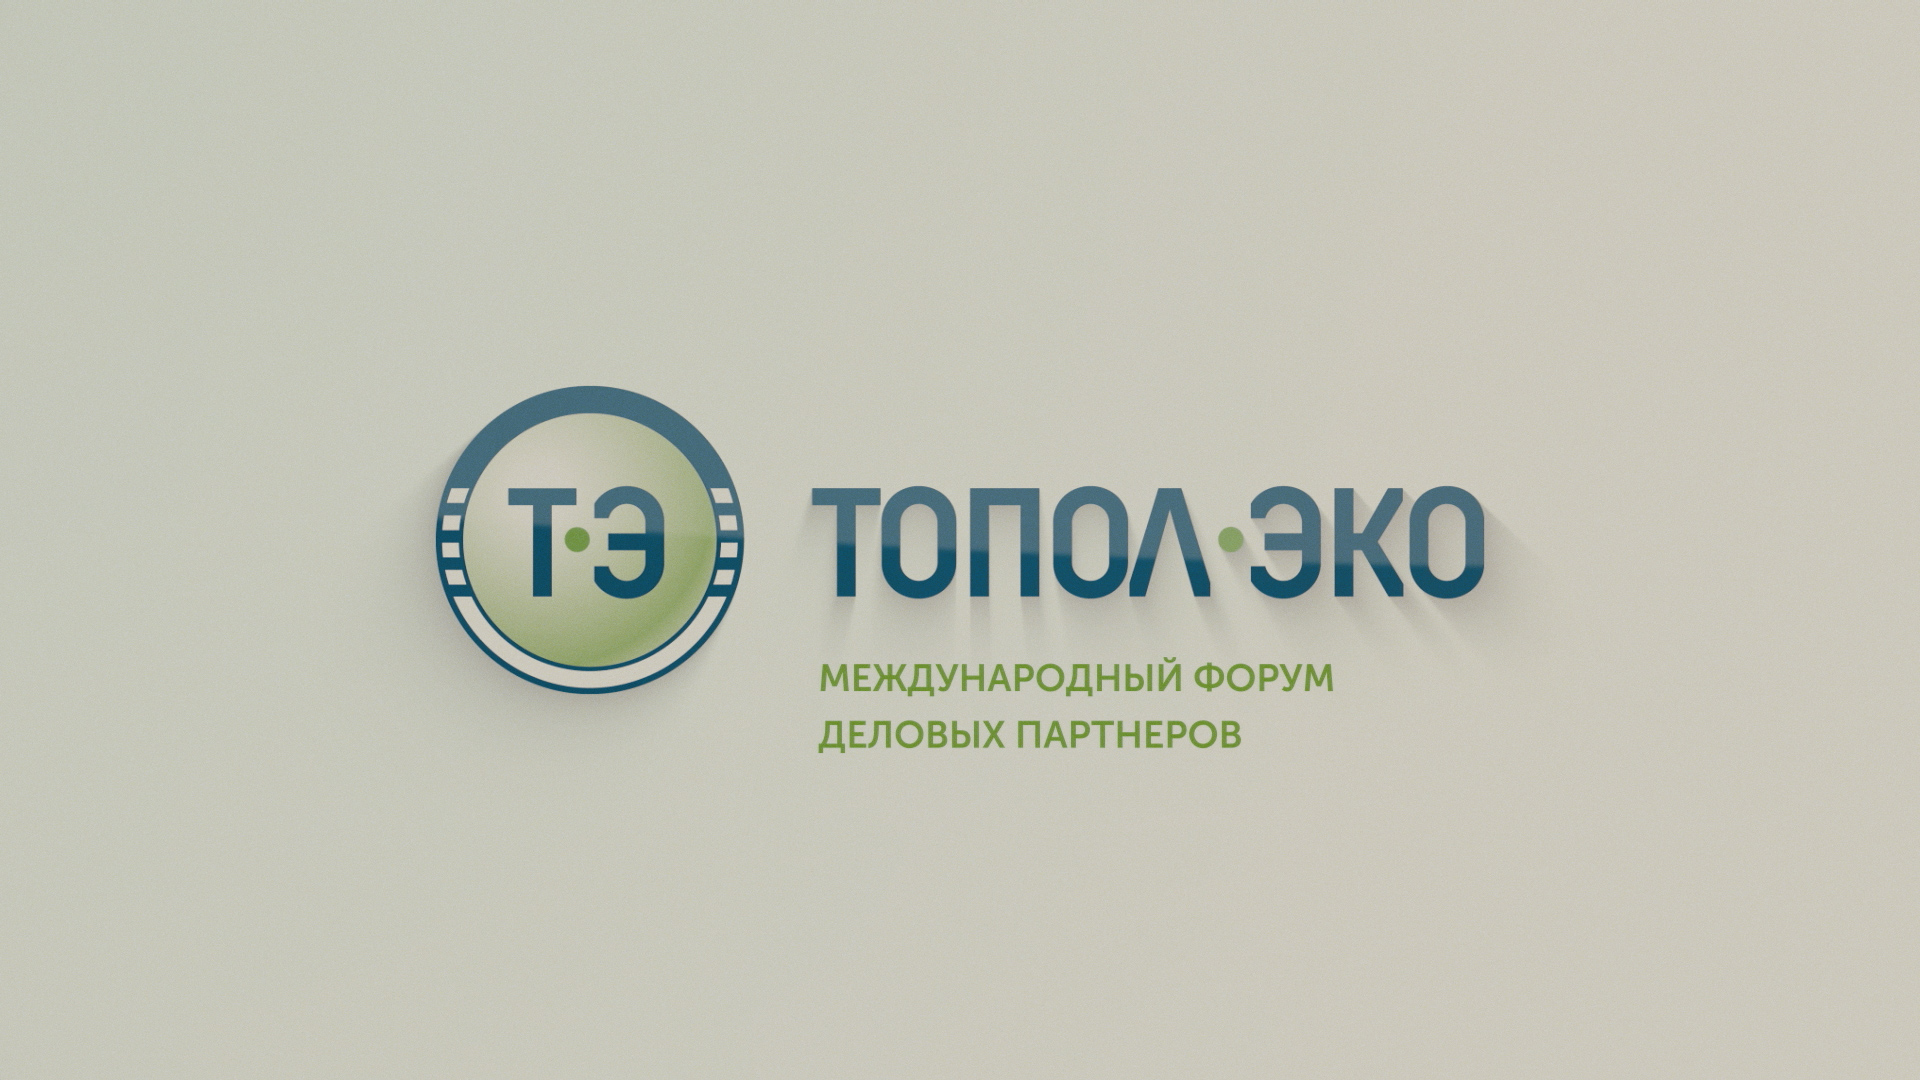 Международный форум деловых партнеров компании "ТОПОЛ-ЭКО"